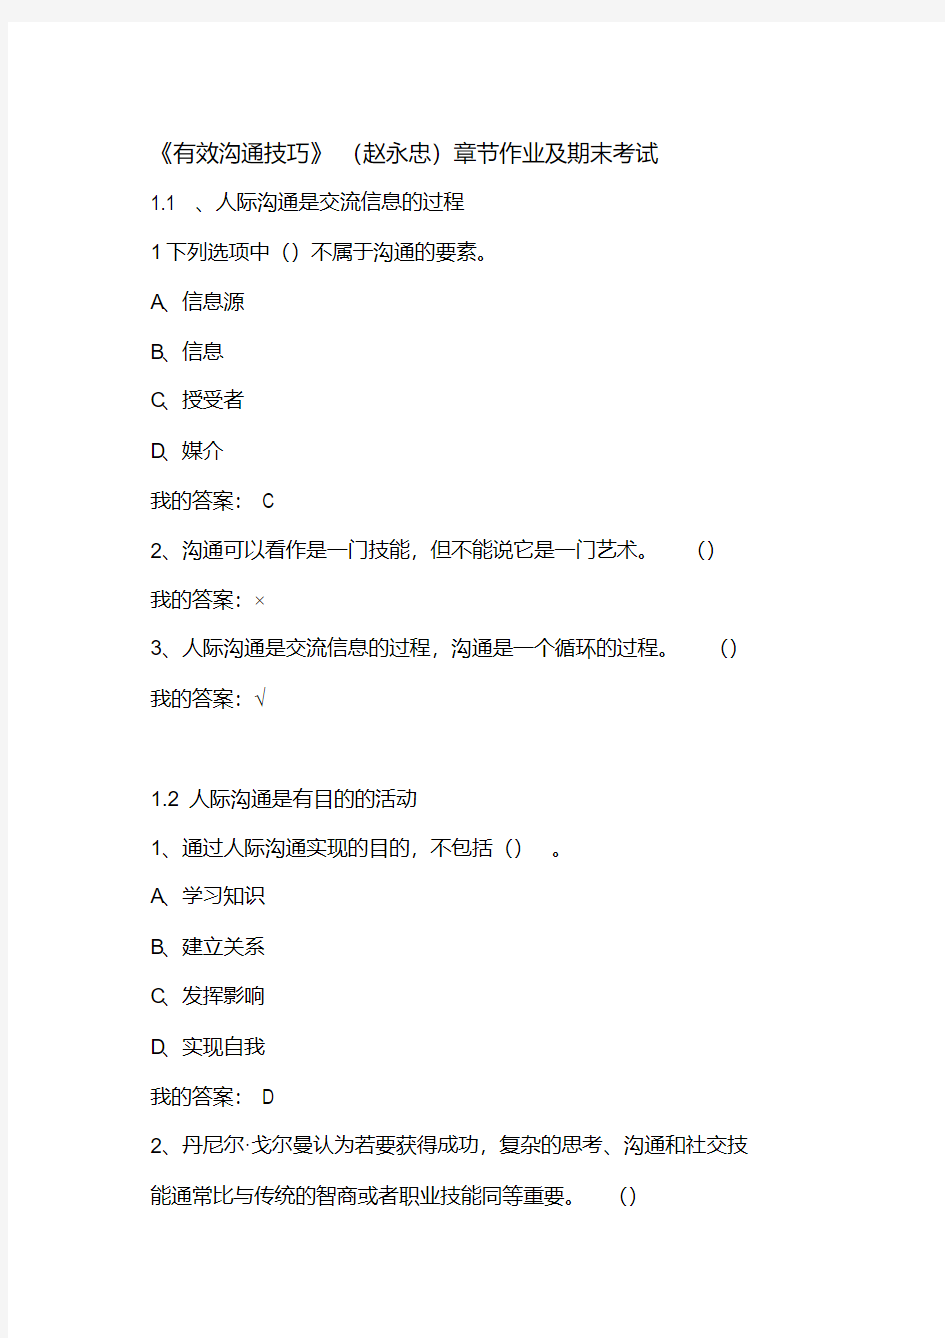 《有效沟通技巧》(赵永忠)章节作业及期末考试资料